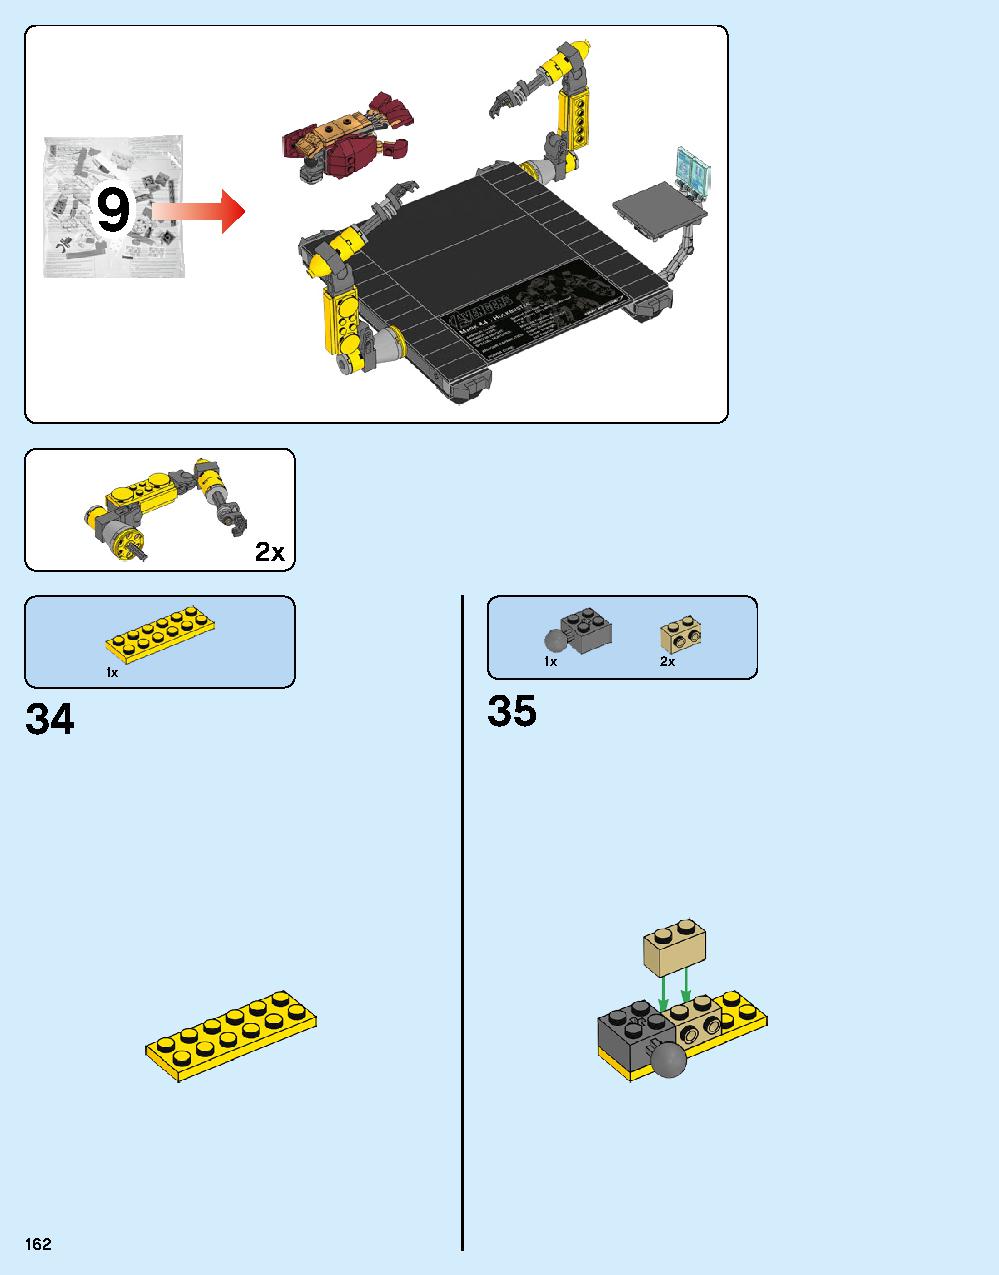 ハルクバスター：ウルトロン・エディション 76105 レゴの商品情報 レゴの説明書・組立方法 162 page